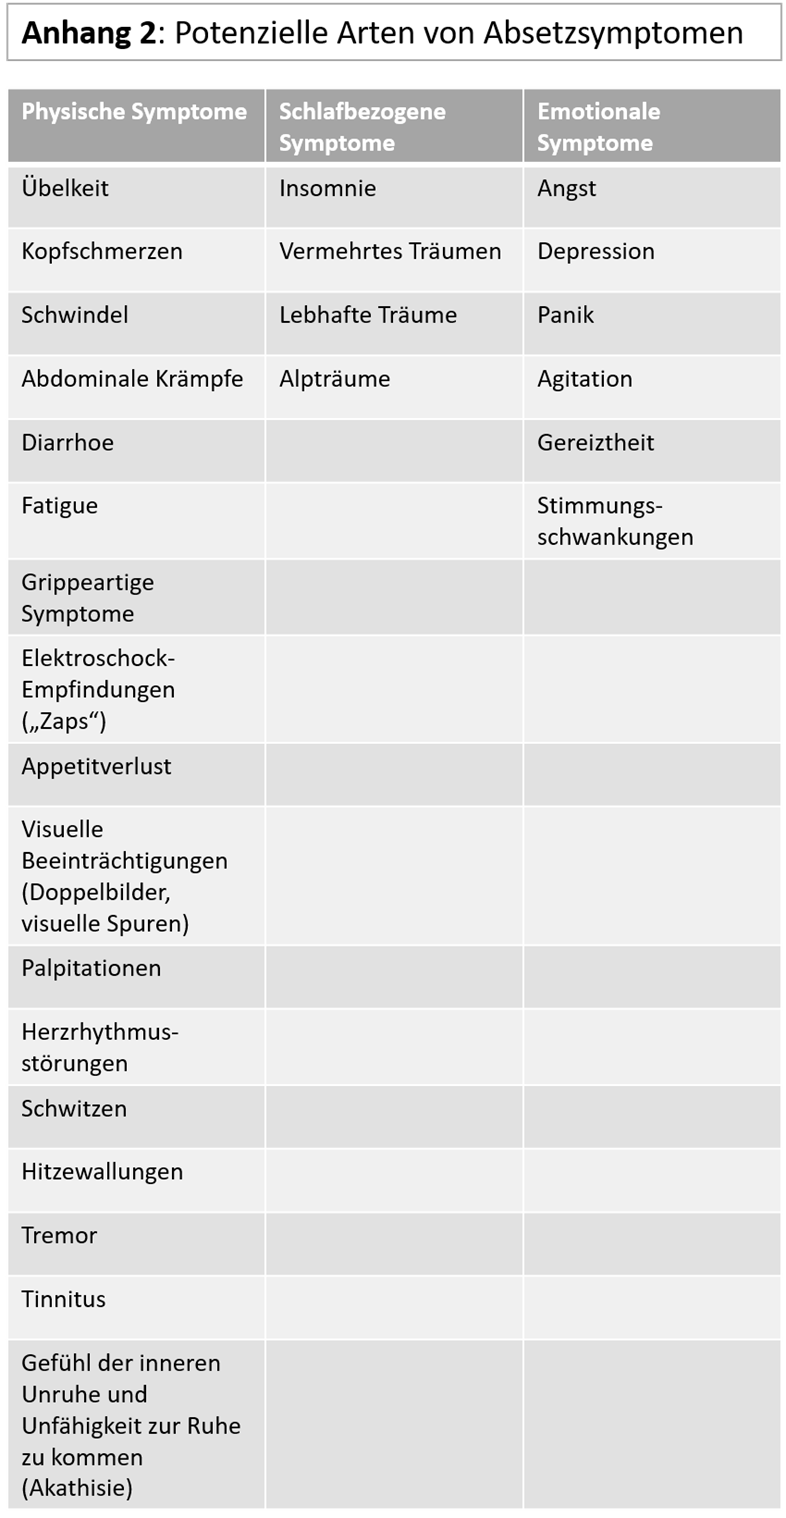 Appendix 2 - symptoms in German